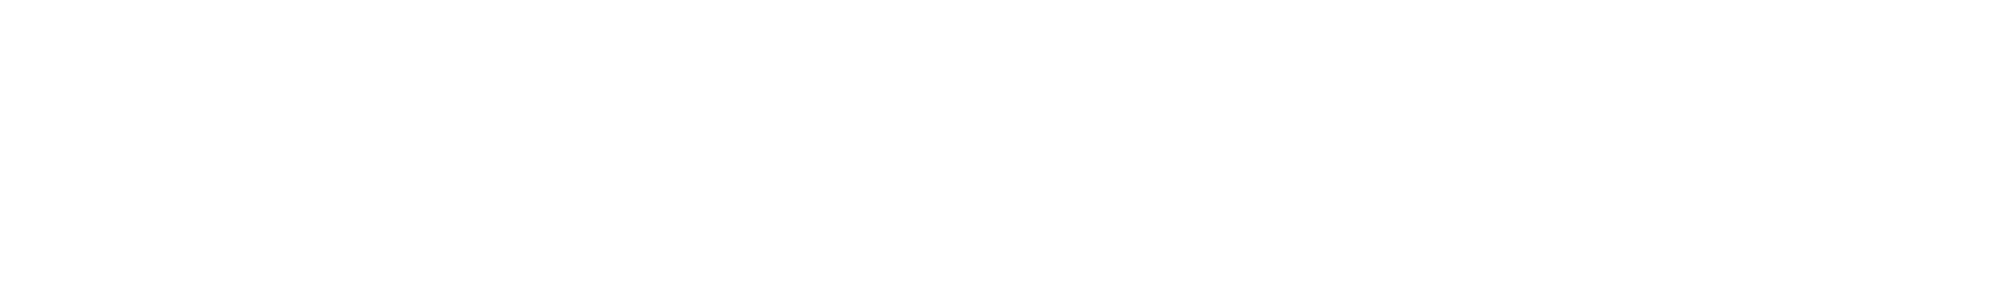 smaller-logo